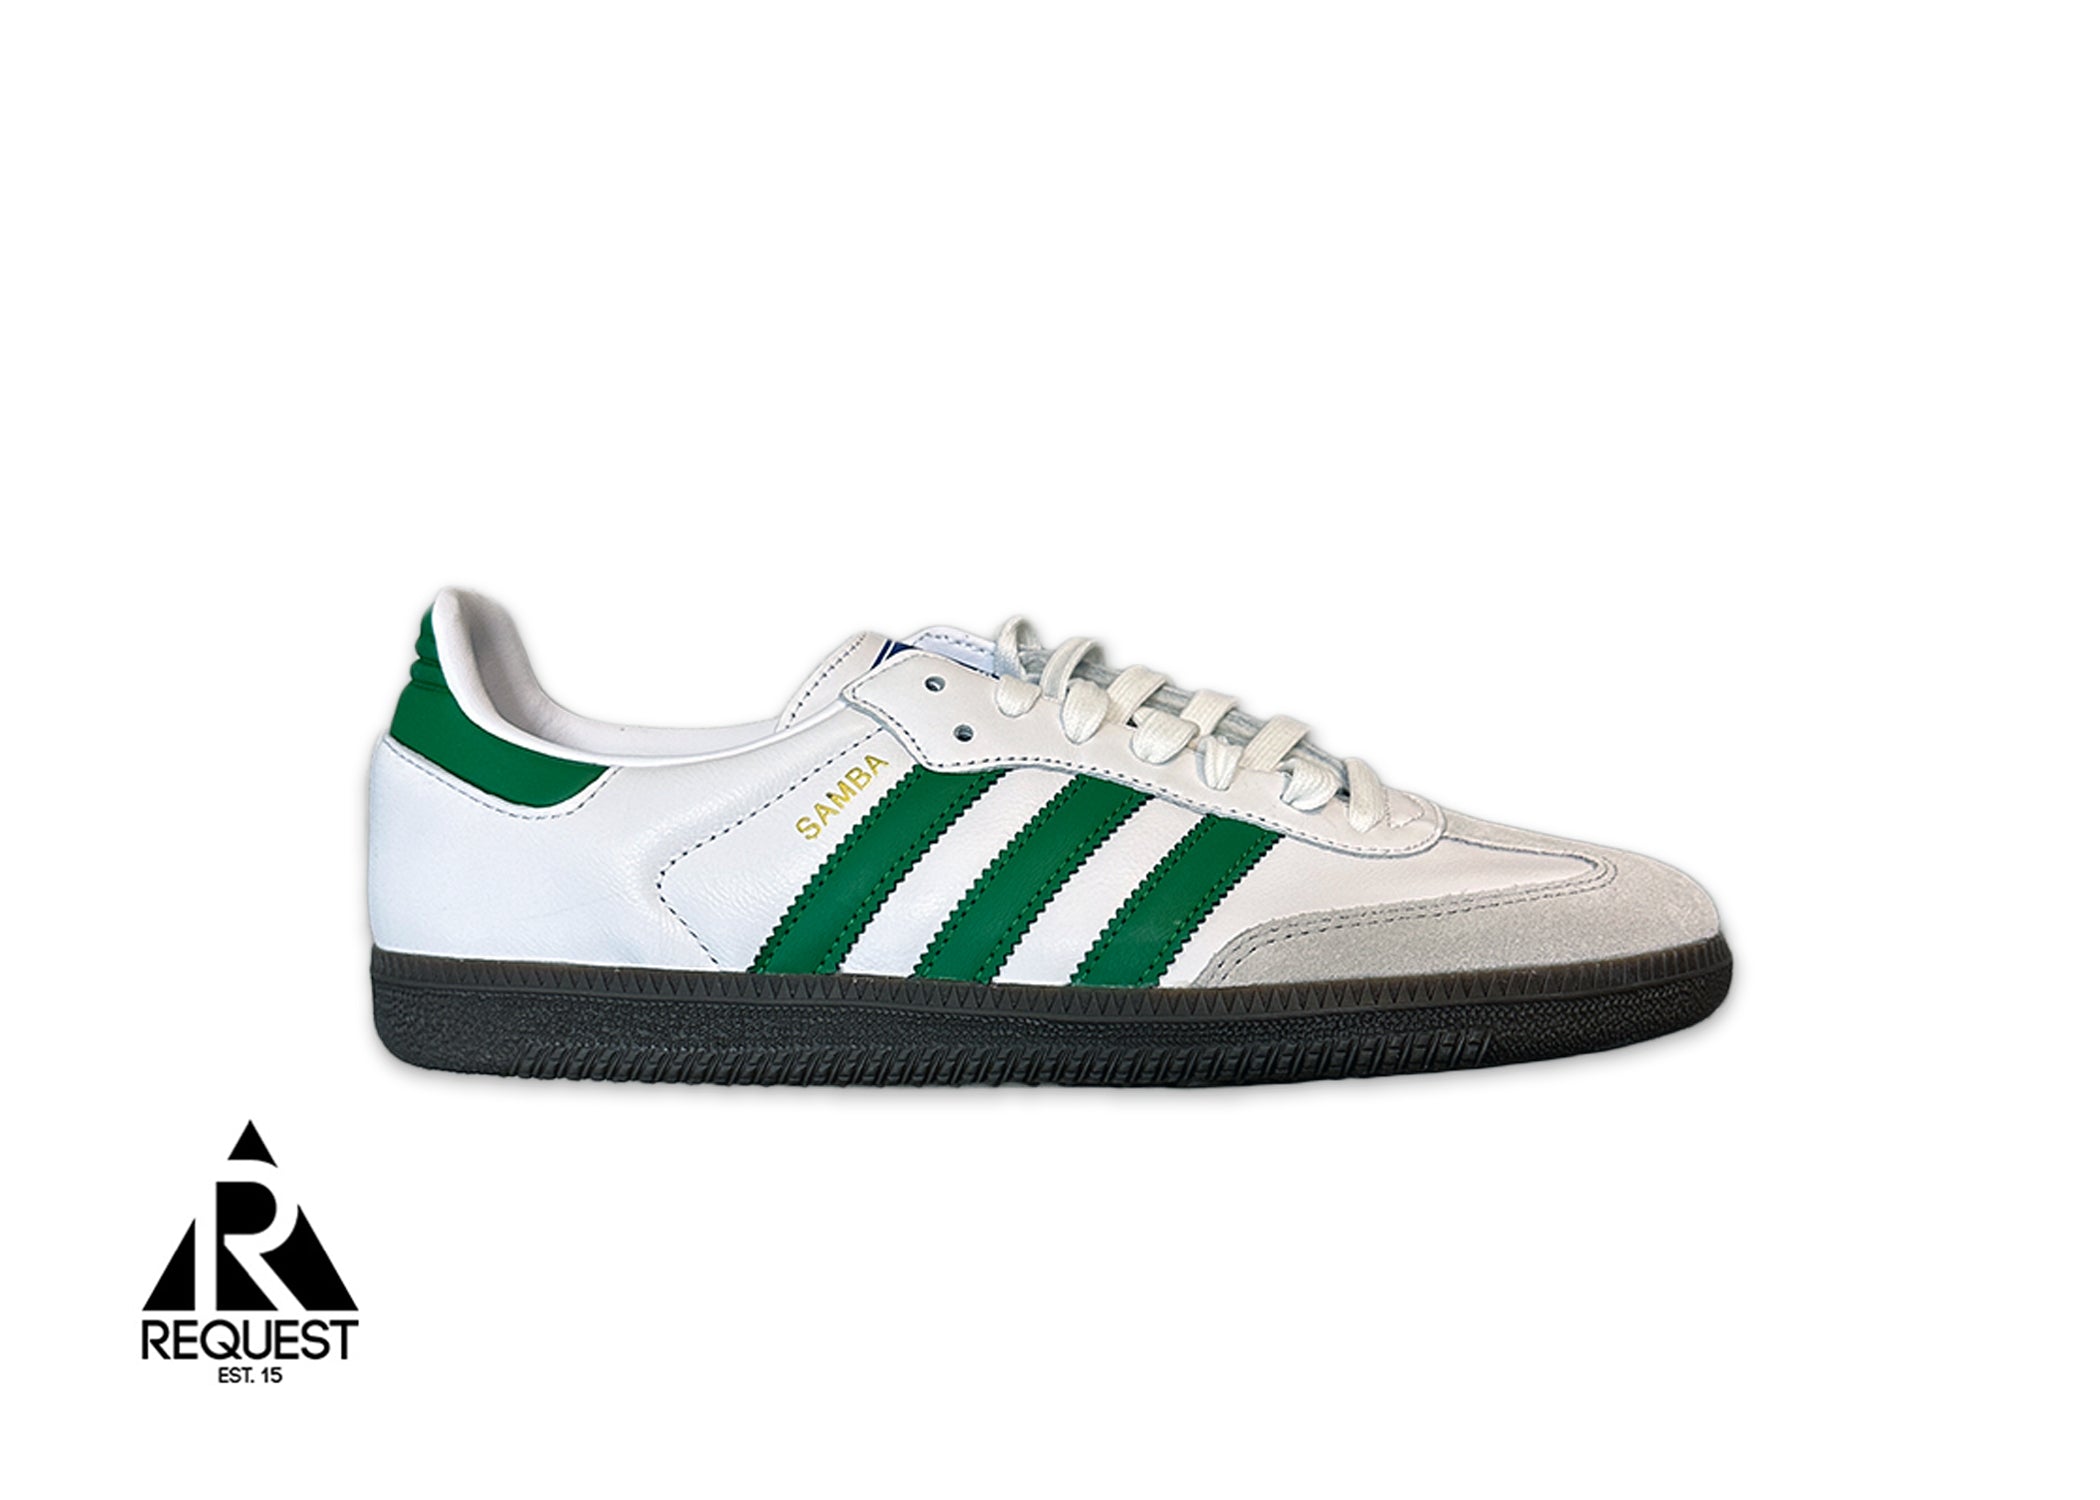 Adidas Samba OG "Footwear White Green"